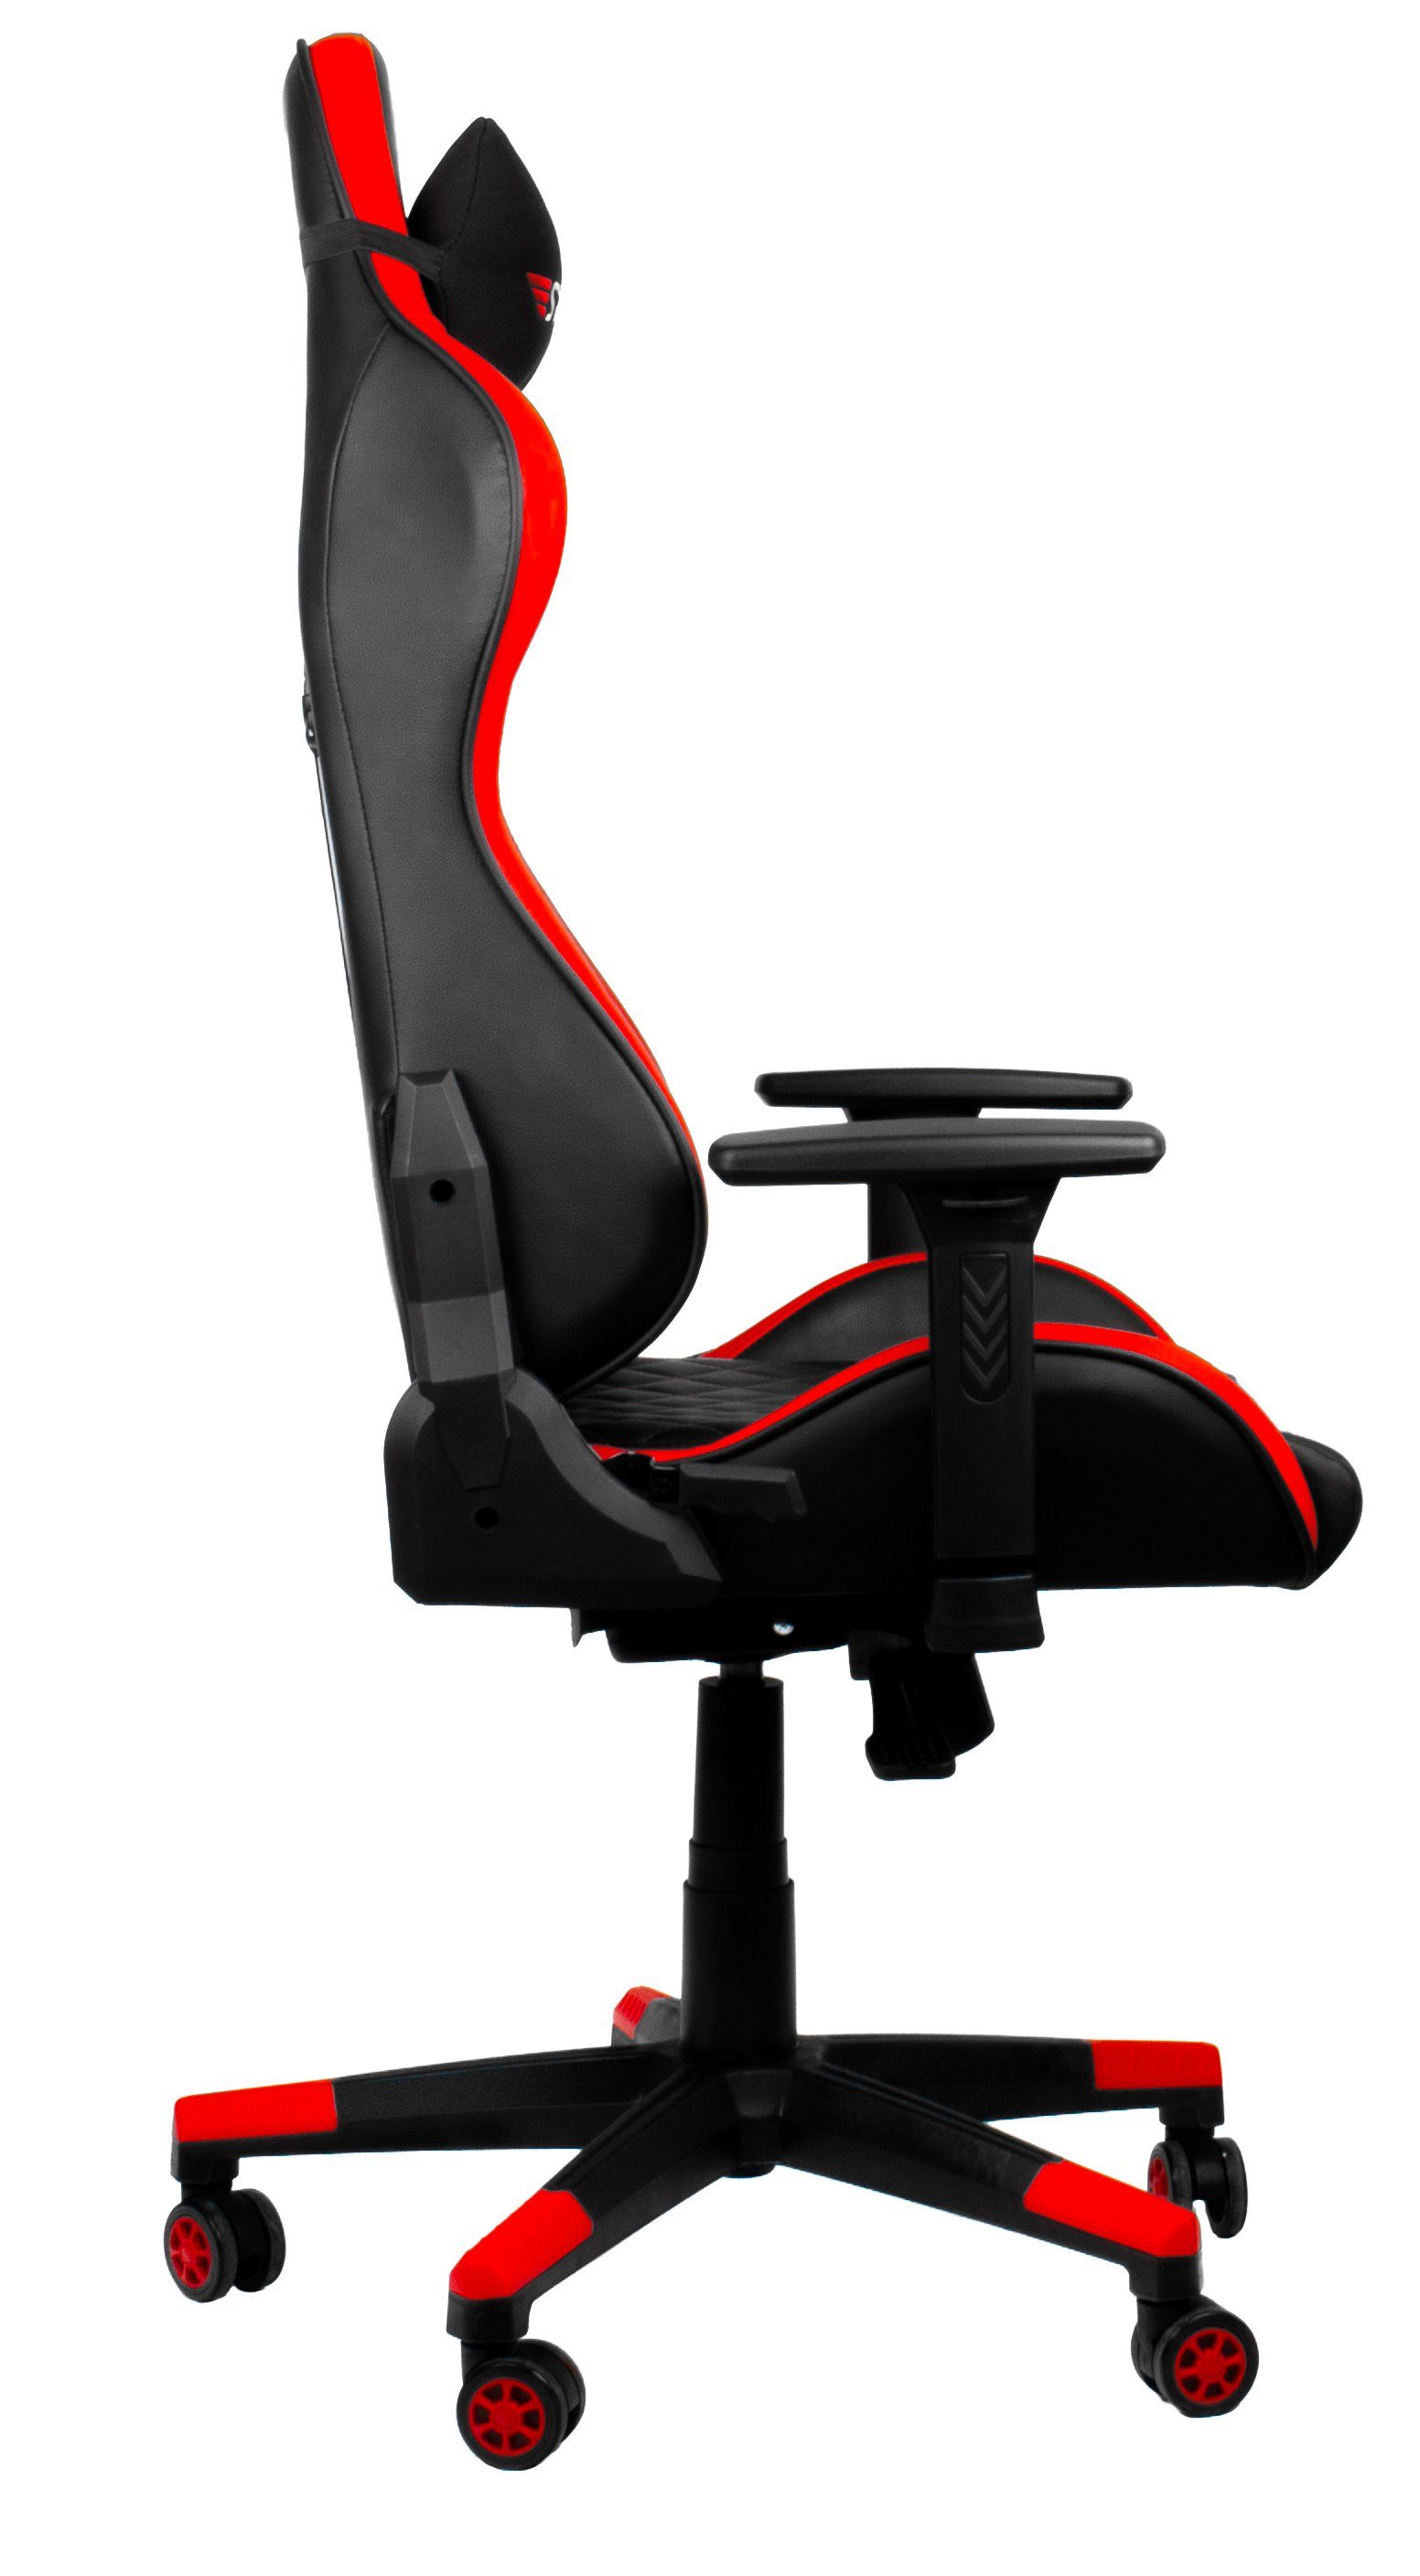 "Striker Gamingstuhl,Schreibtischstuhl Hyrican Gaming-Stuhl XL" Code Red ergonomischer